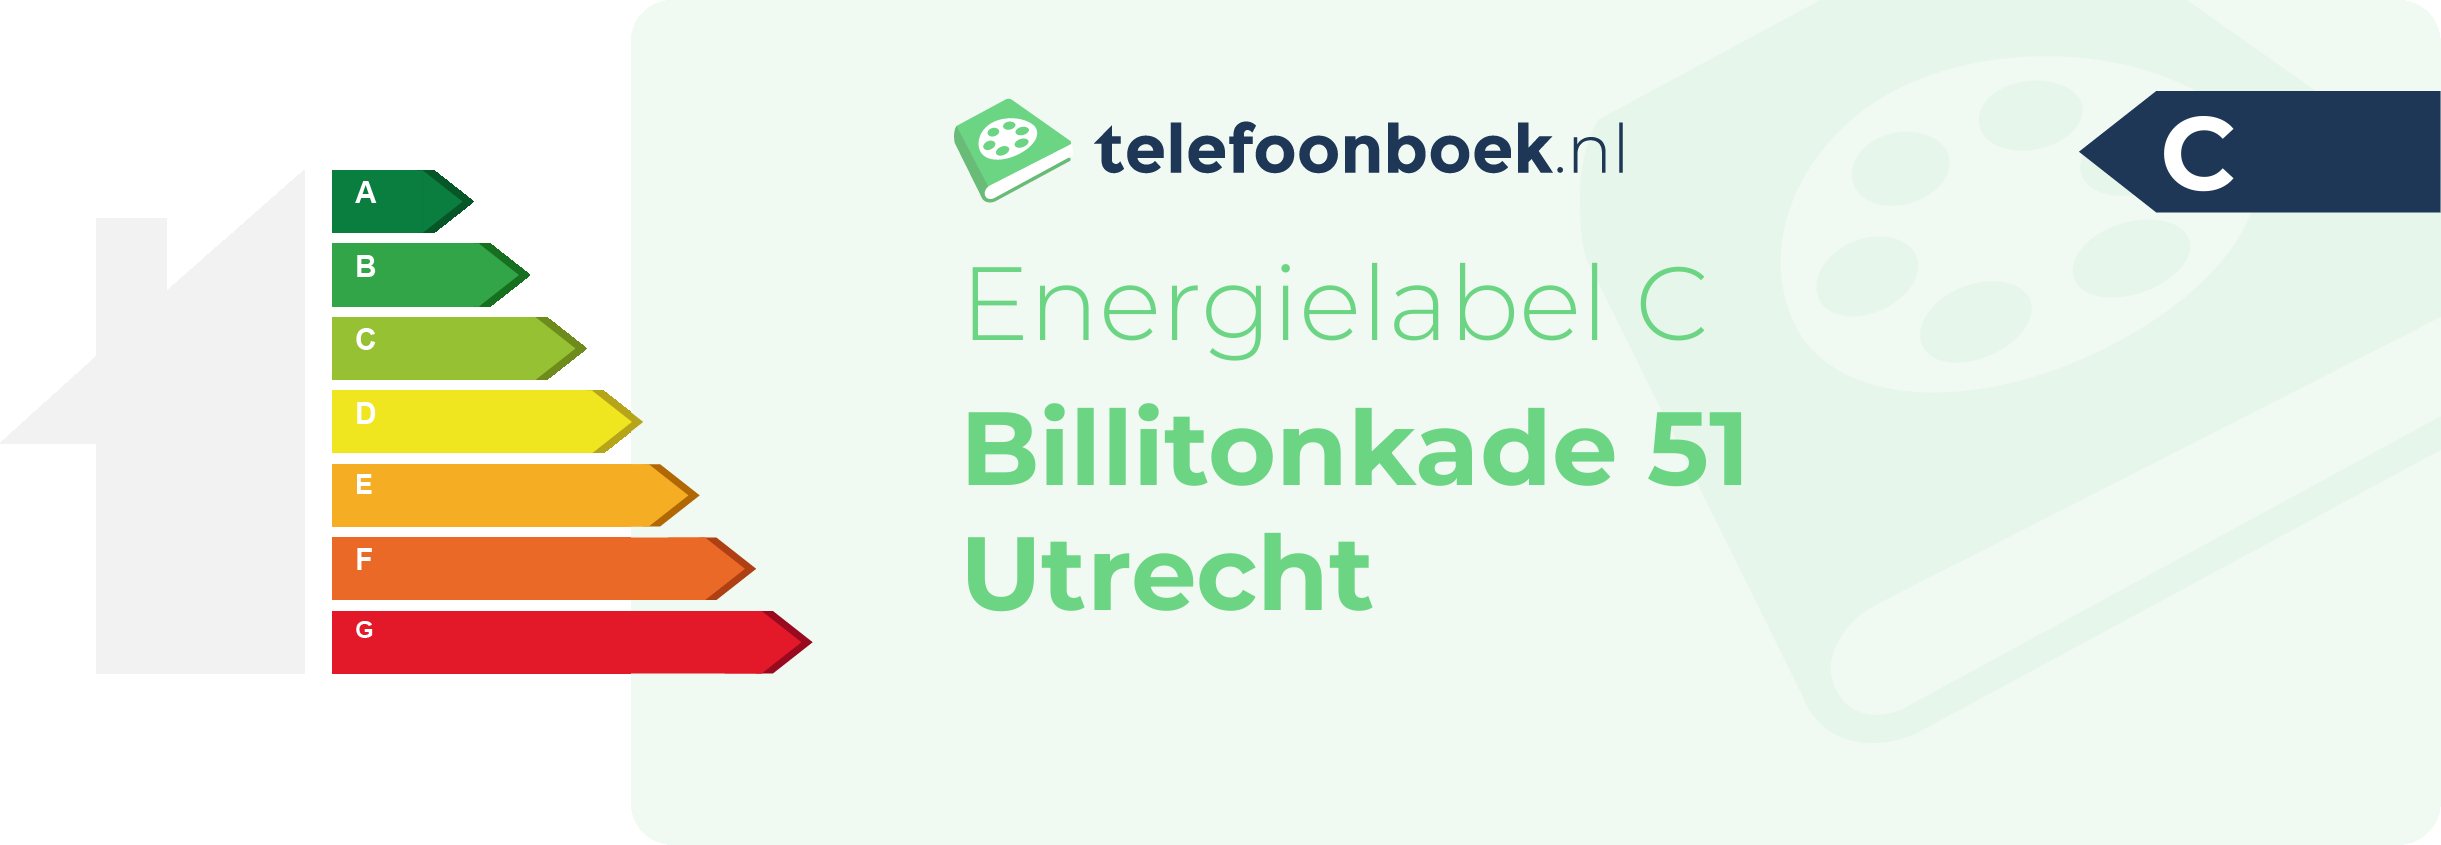 Energielabel Billitonkade 51 Utrecht